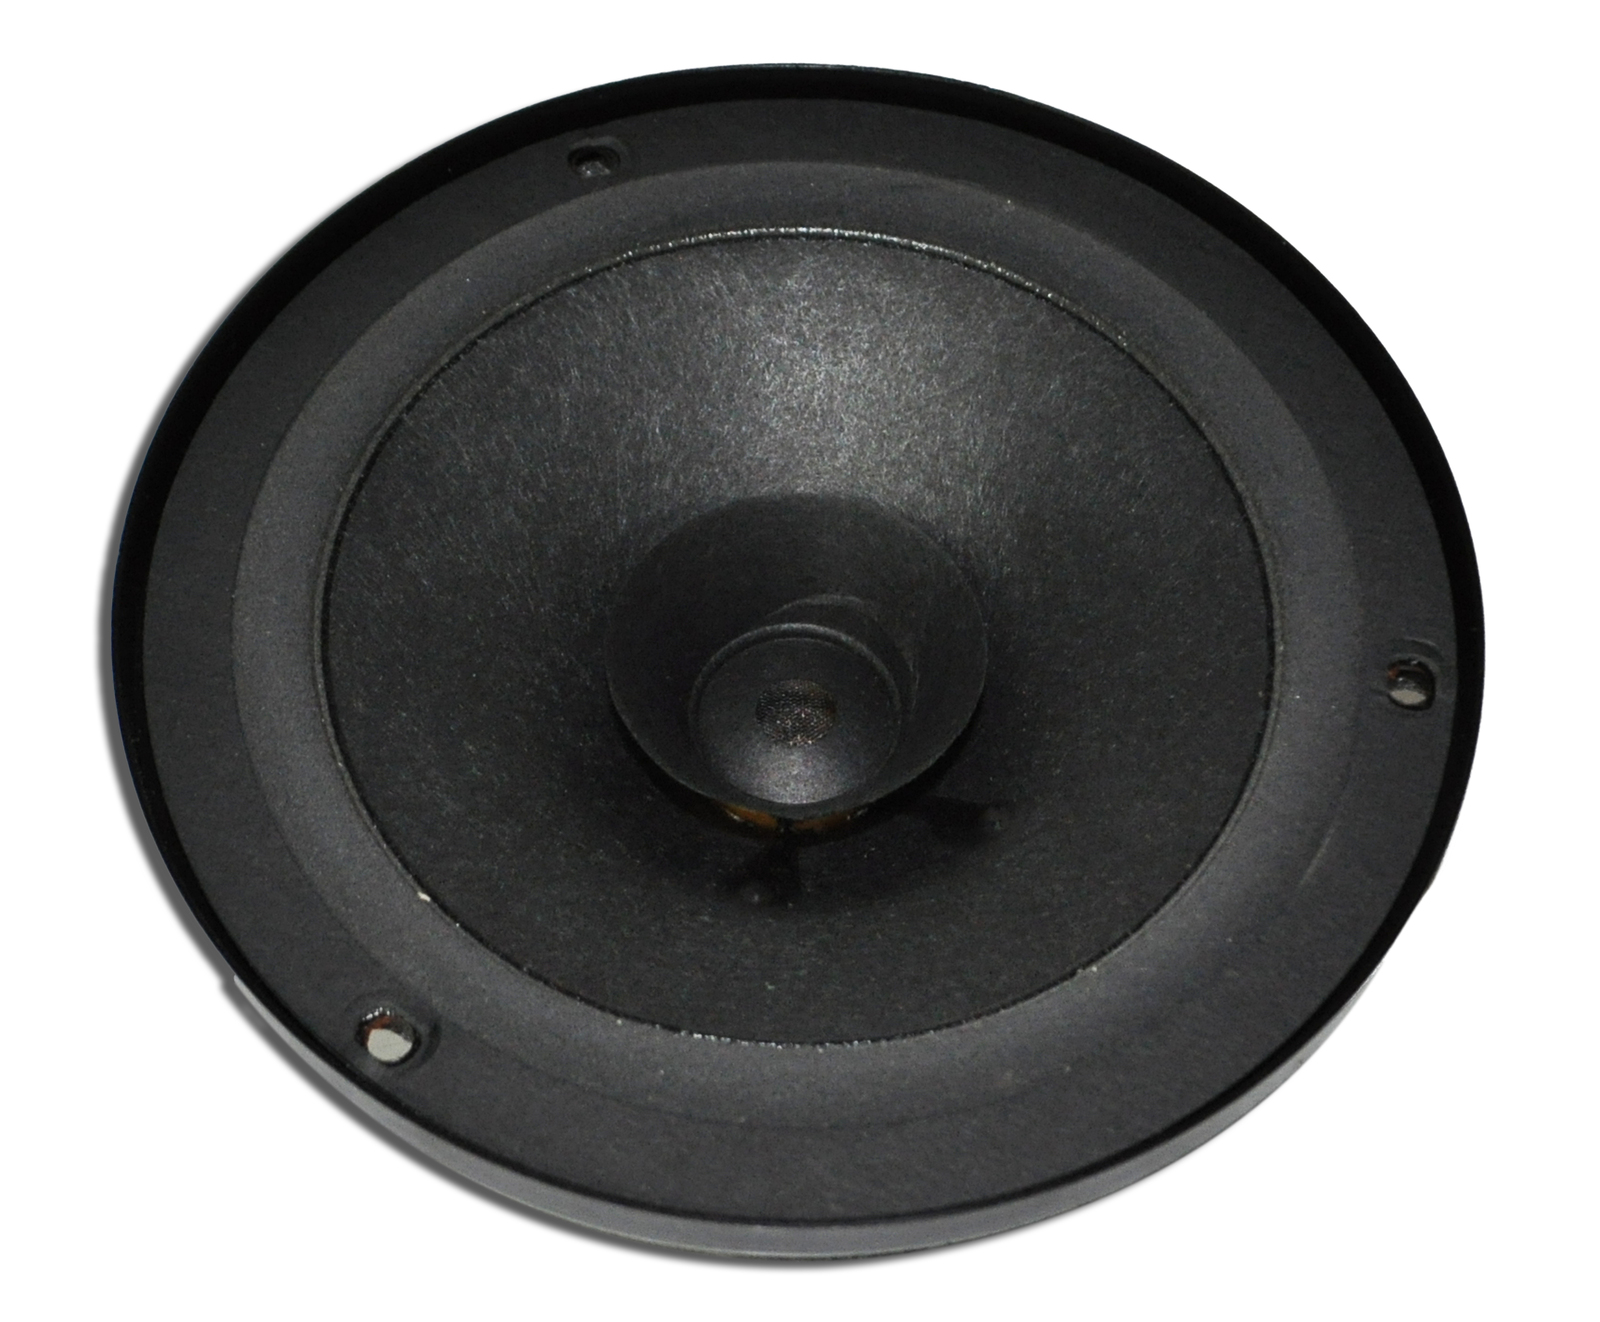 ve commodore door speaker size